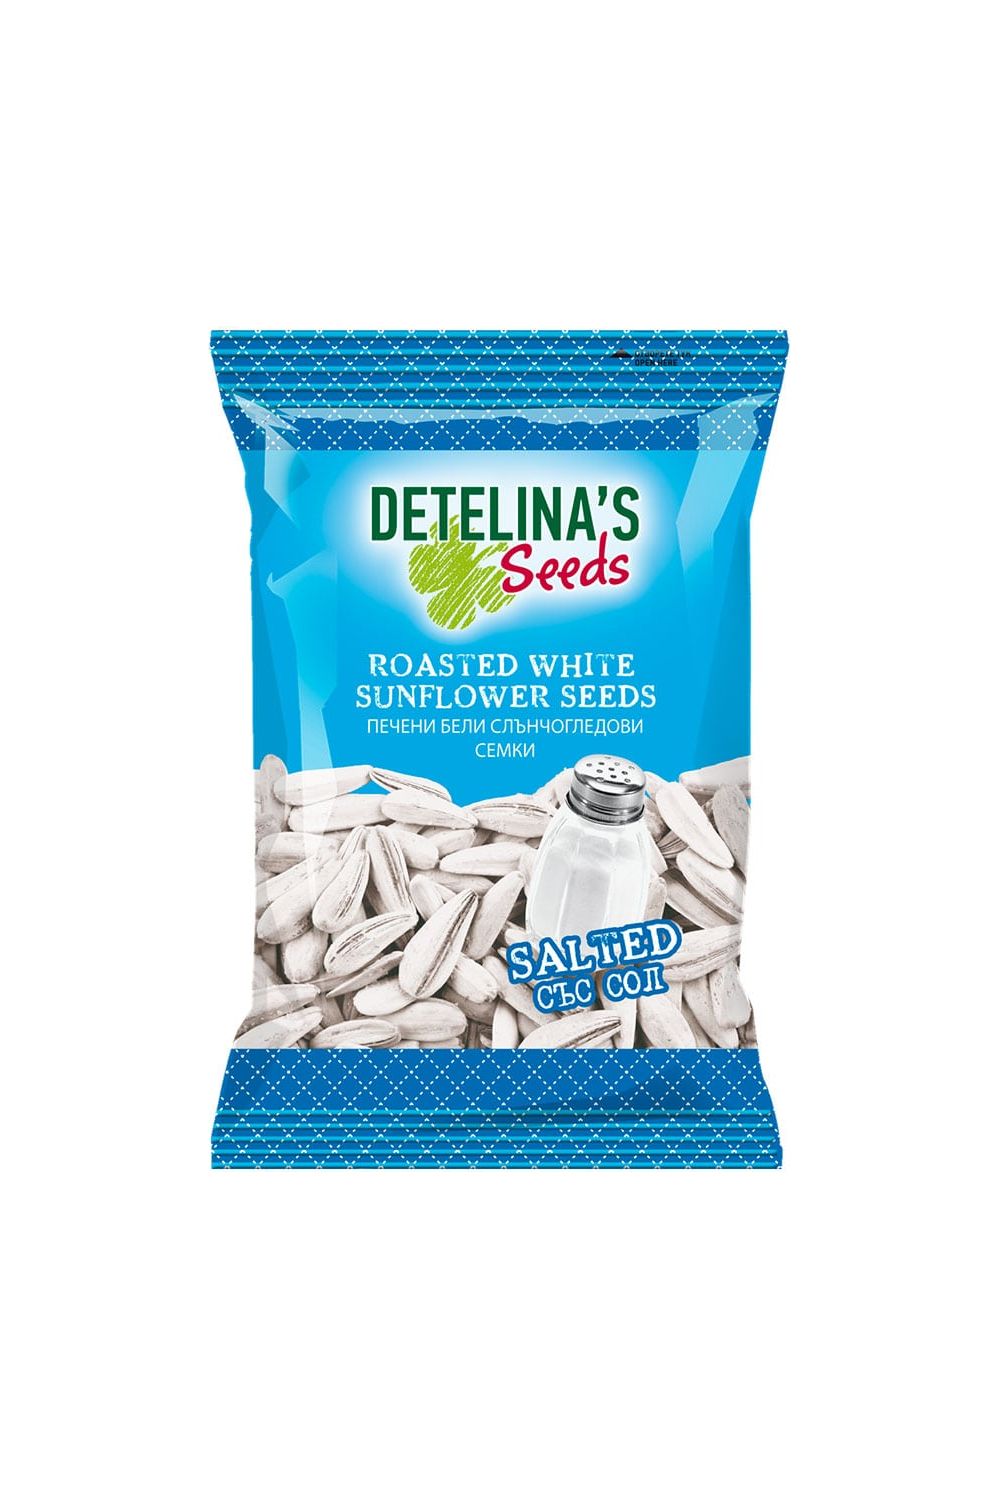 Roasted WHITE Sunflower Seeds "Detelina" - 140g